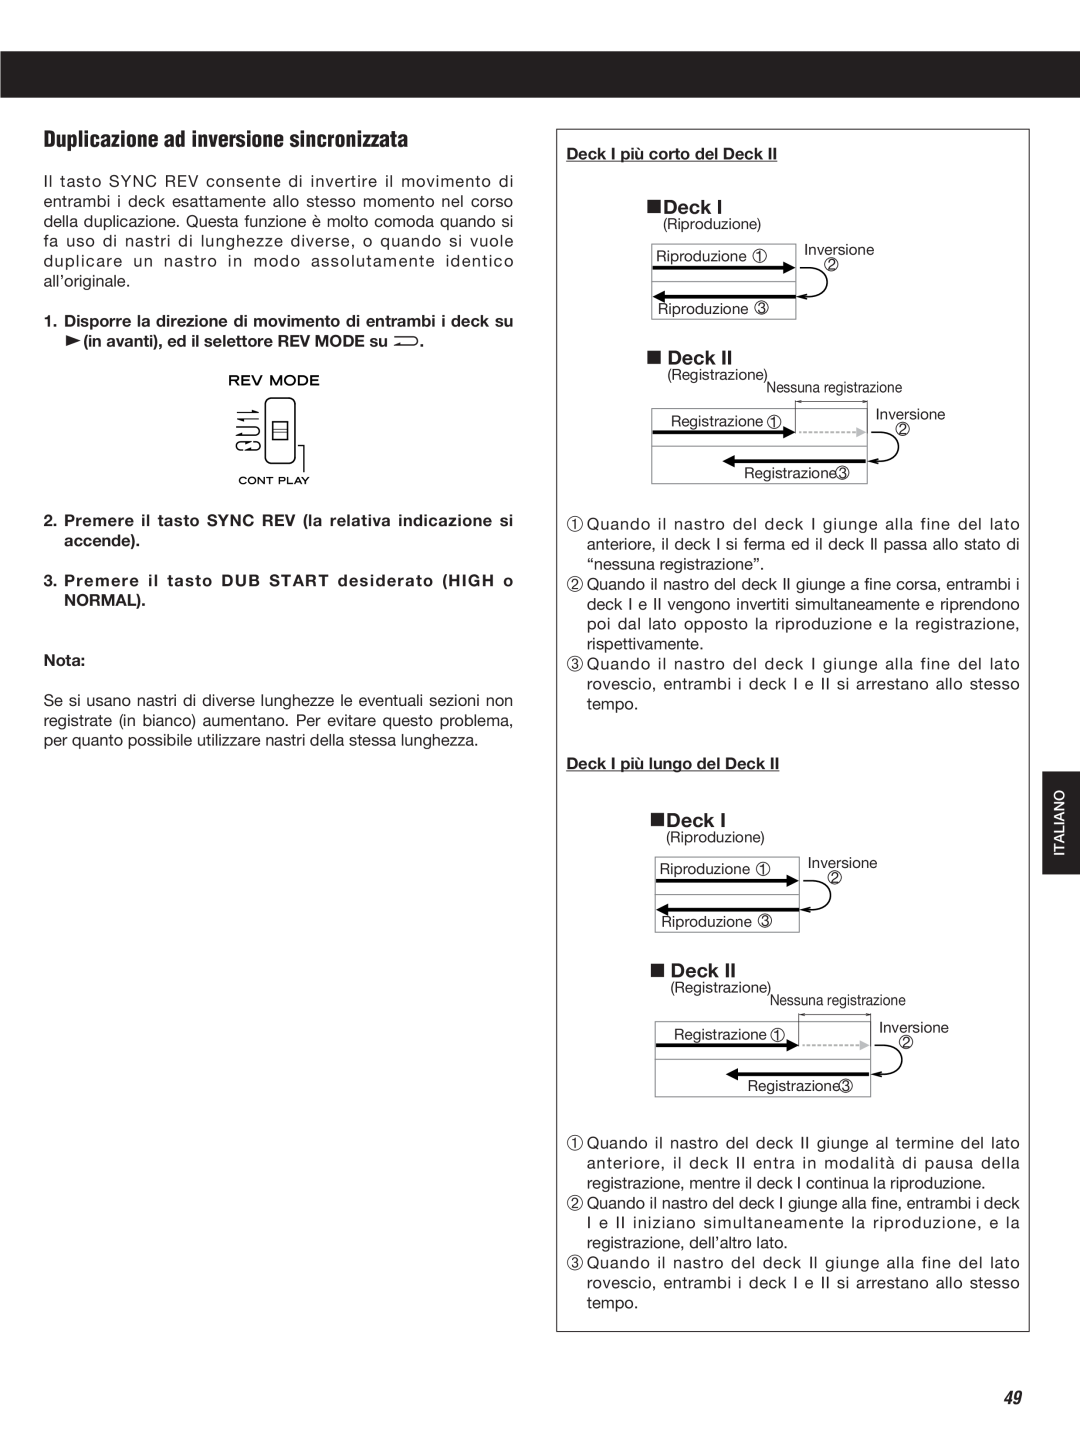 Teac W-860R owner manual Duplicazione ad inversione sincronizzata, Deck 